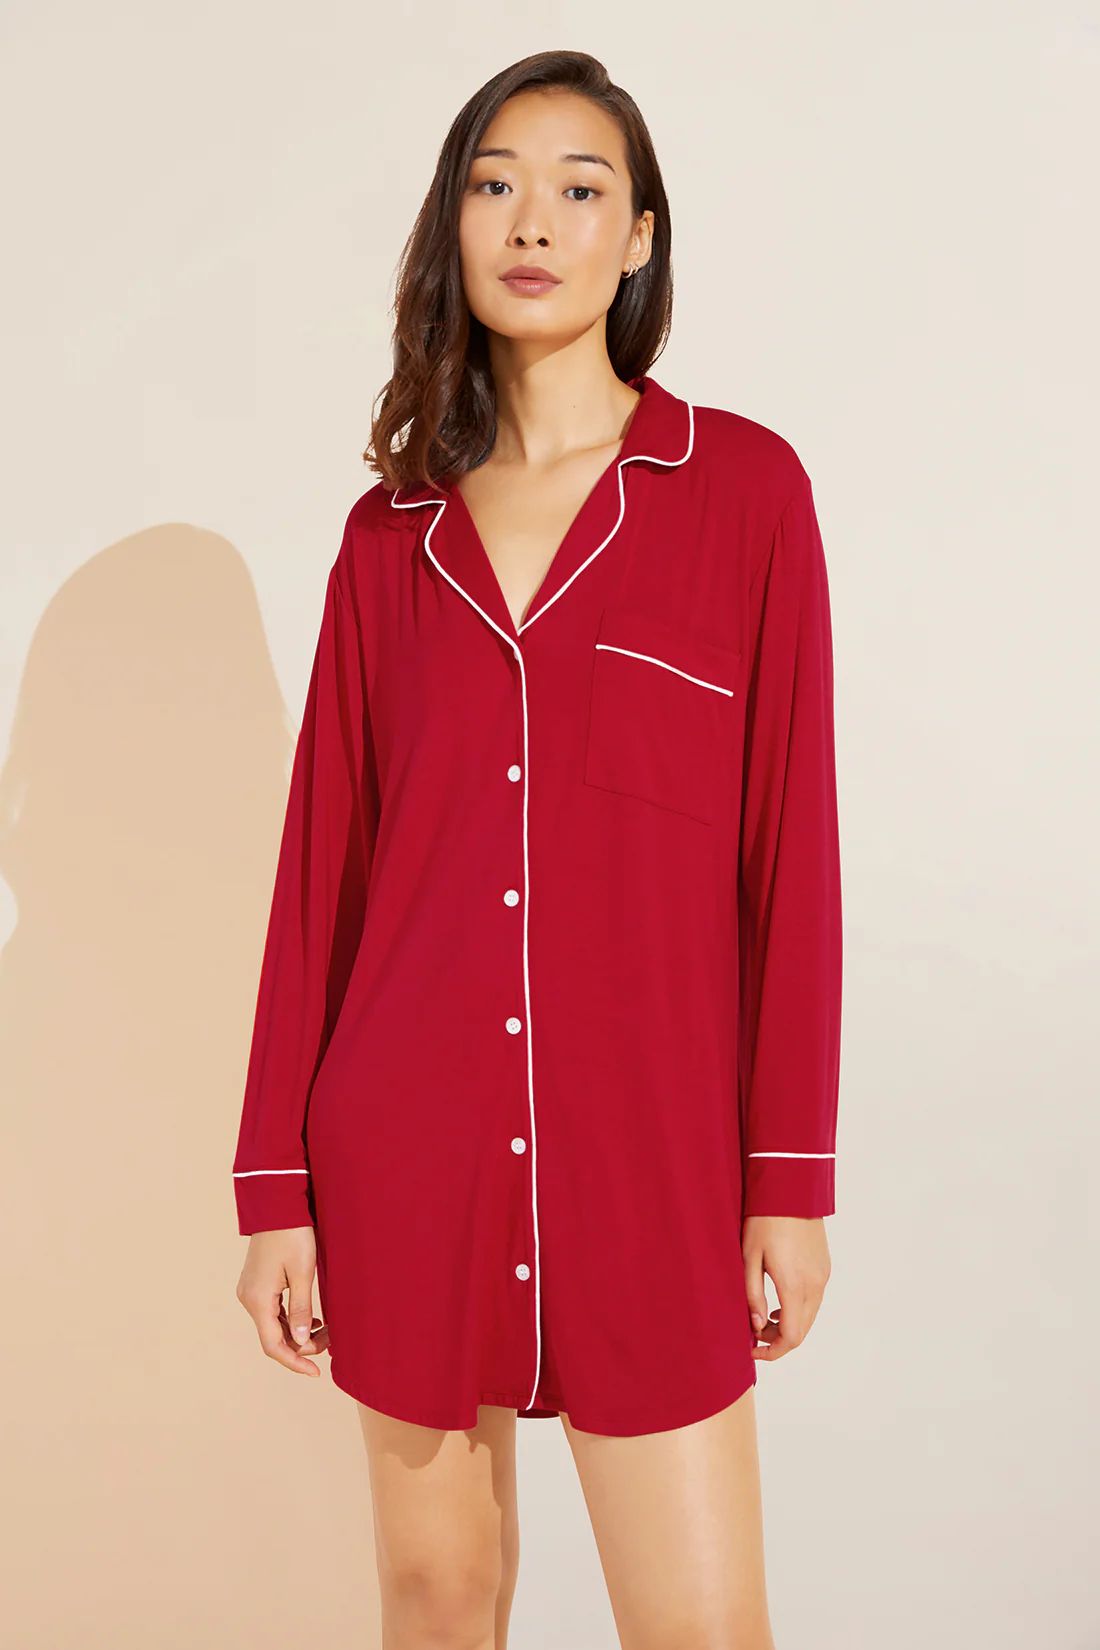 Gisele TENCEL™ Modal Sleepshirt - Haute Red/Ivory - Eberjey | Eberjey